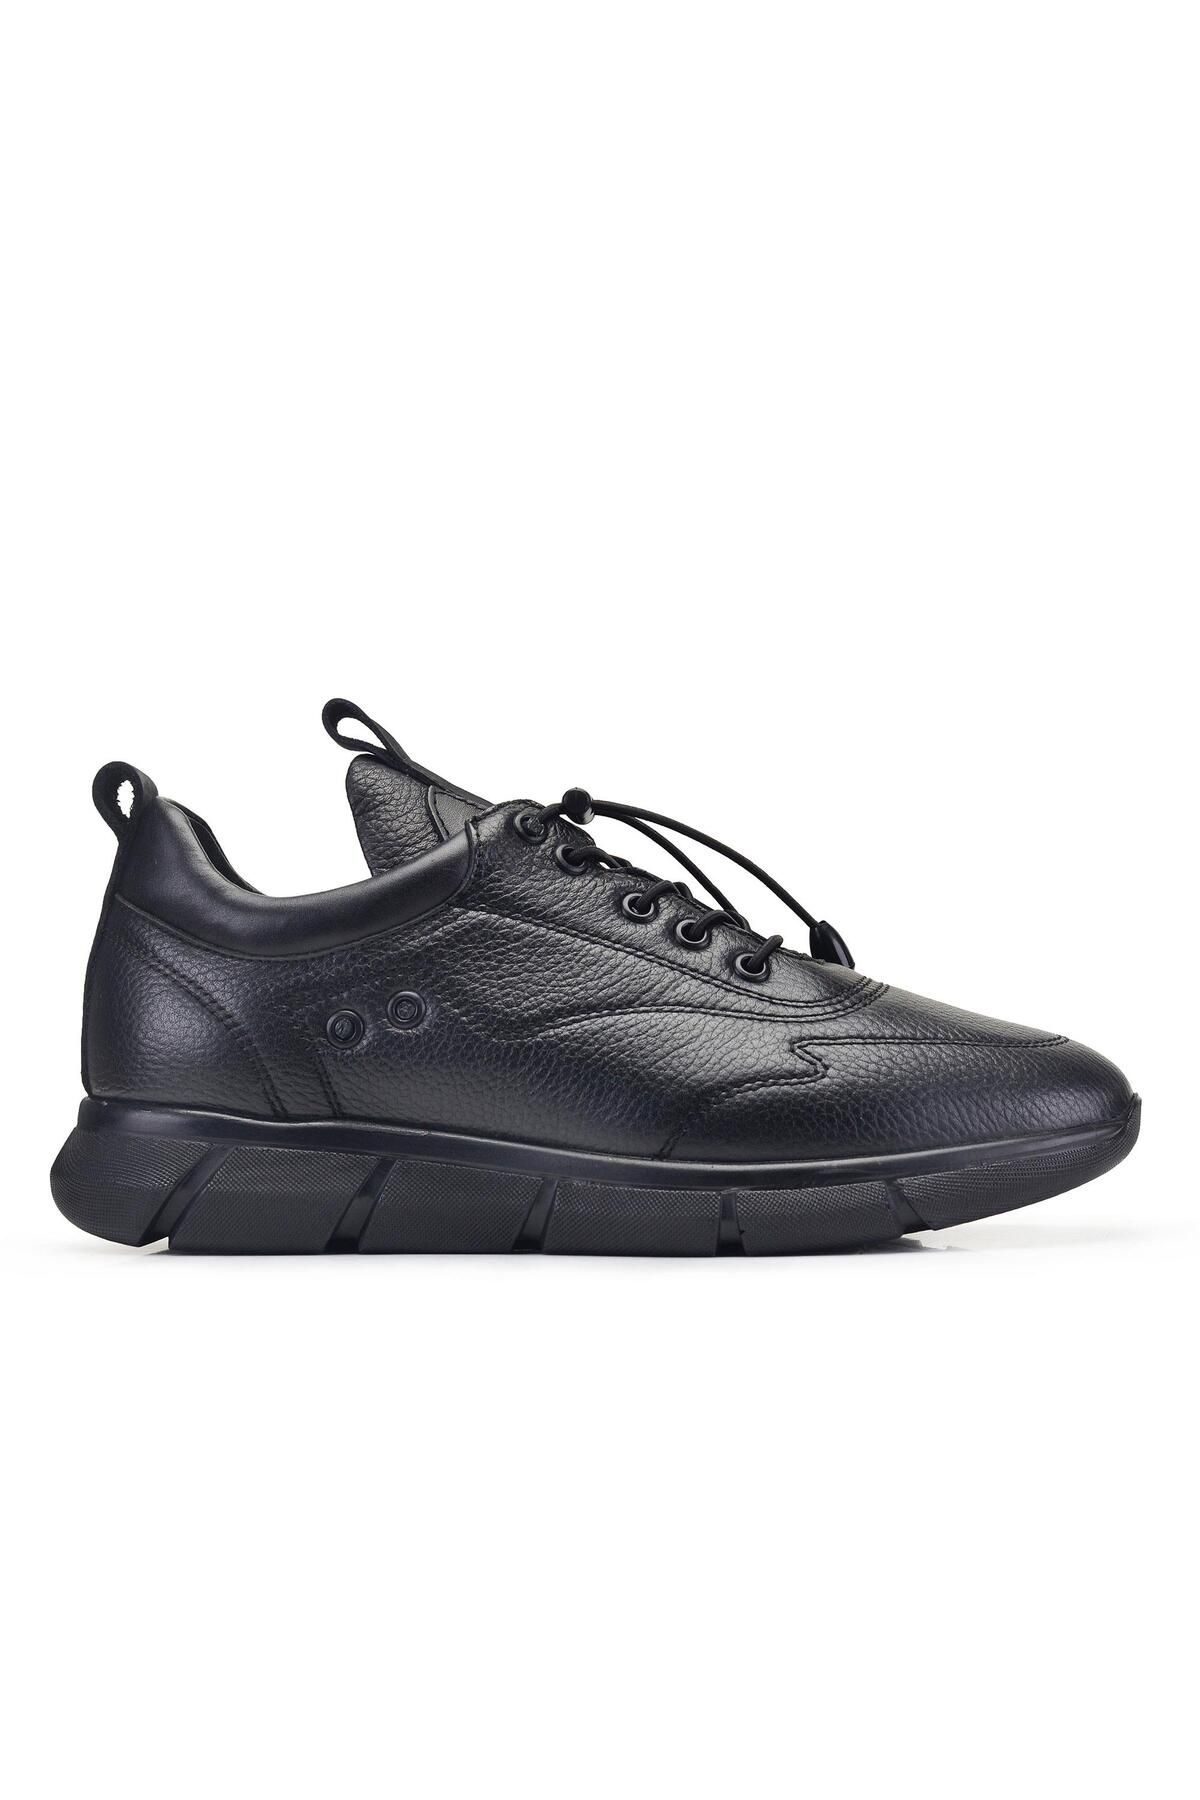 Nevzat Onay Siyah Bağcıklı Erkek Sneaker -42101-